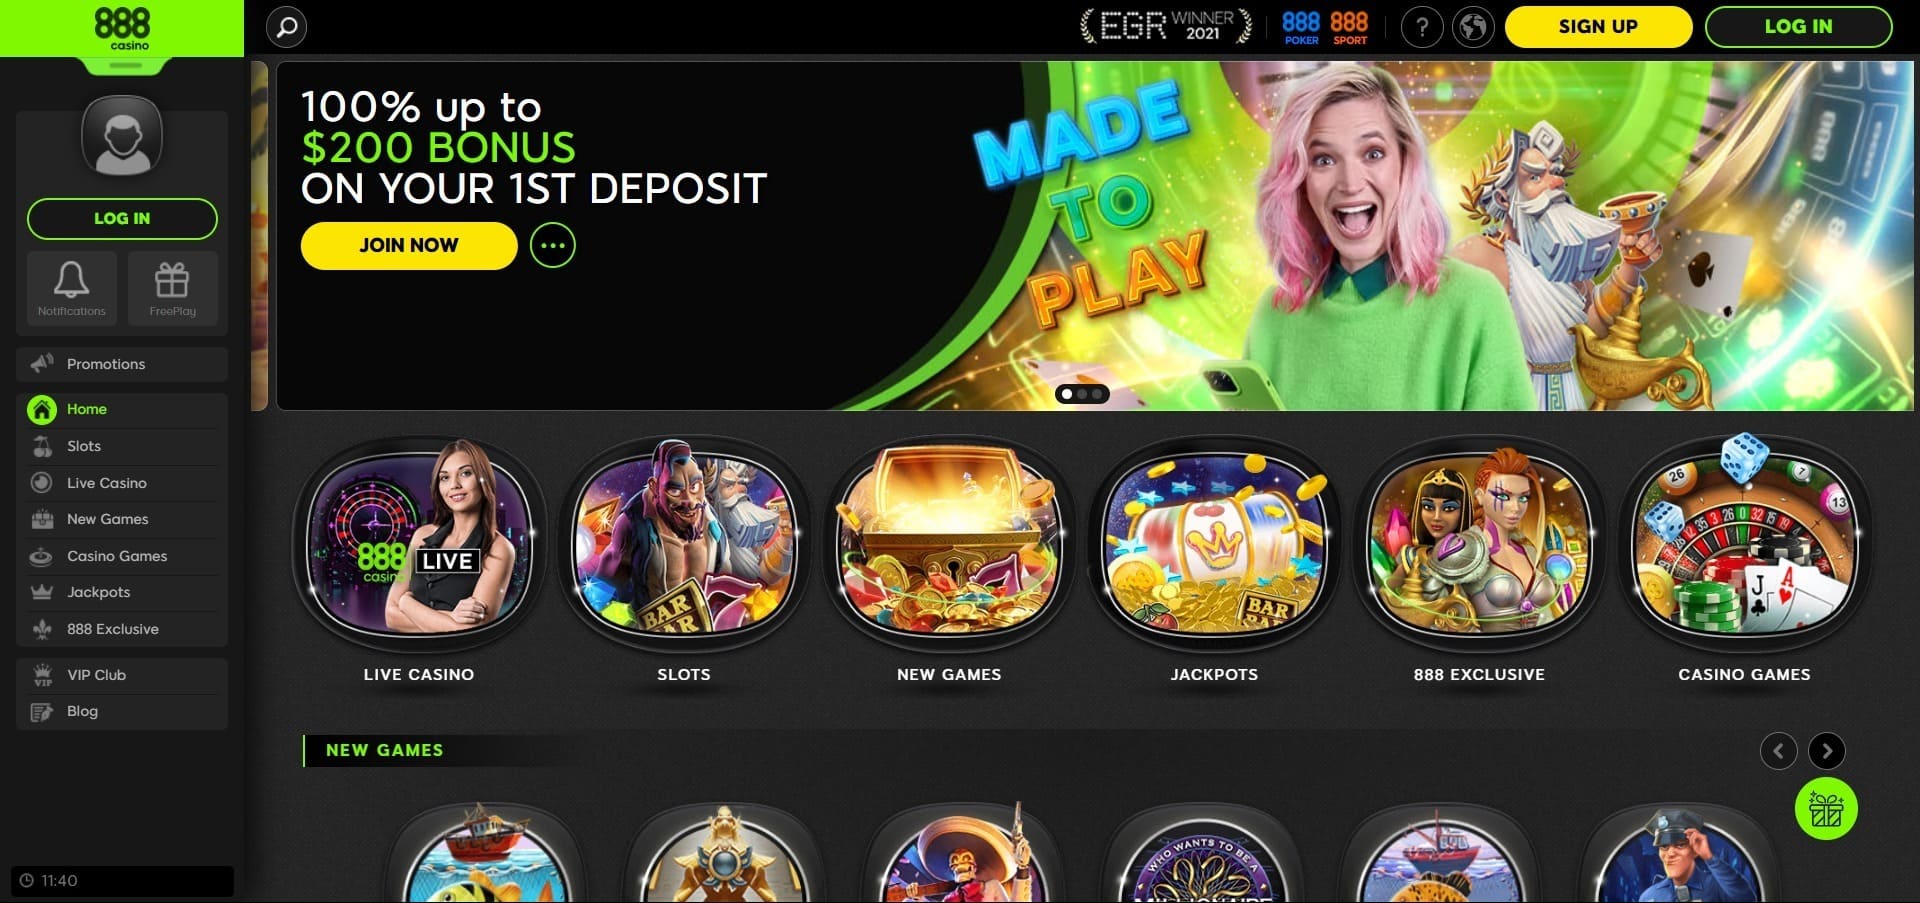 888 Casino'nun resmi web sitesi